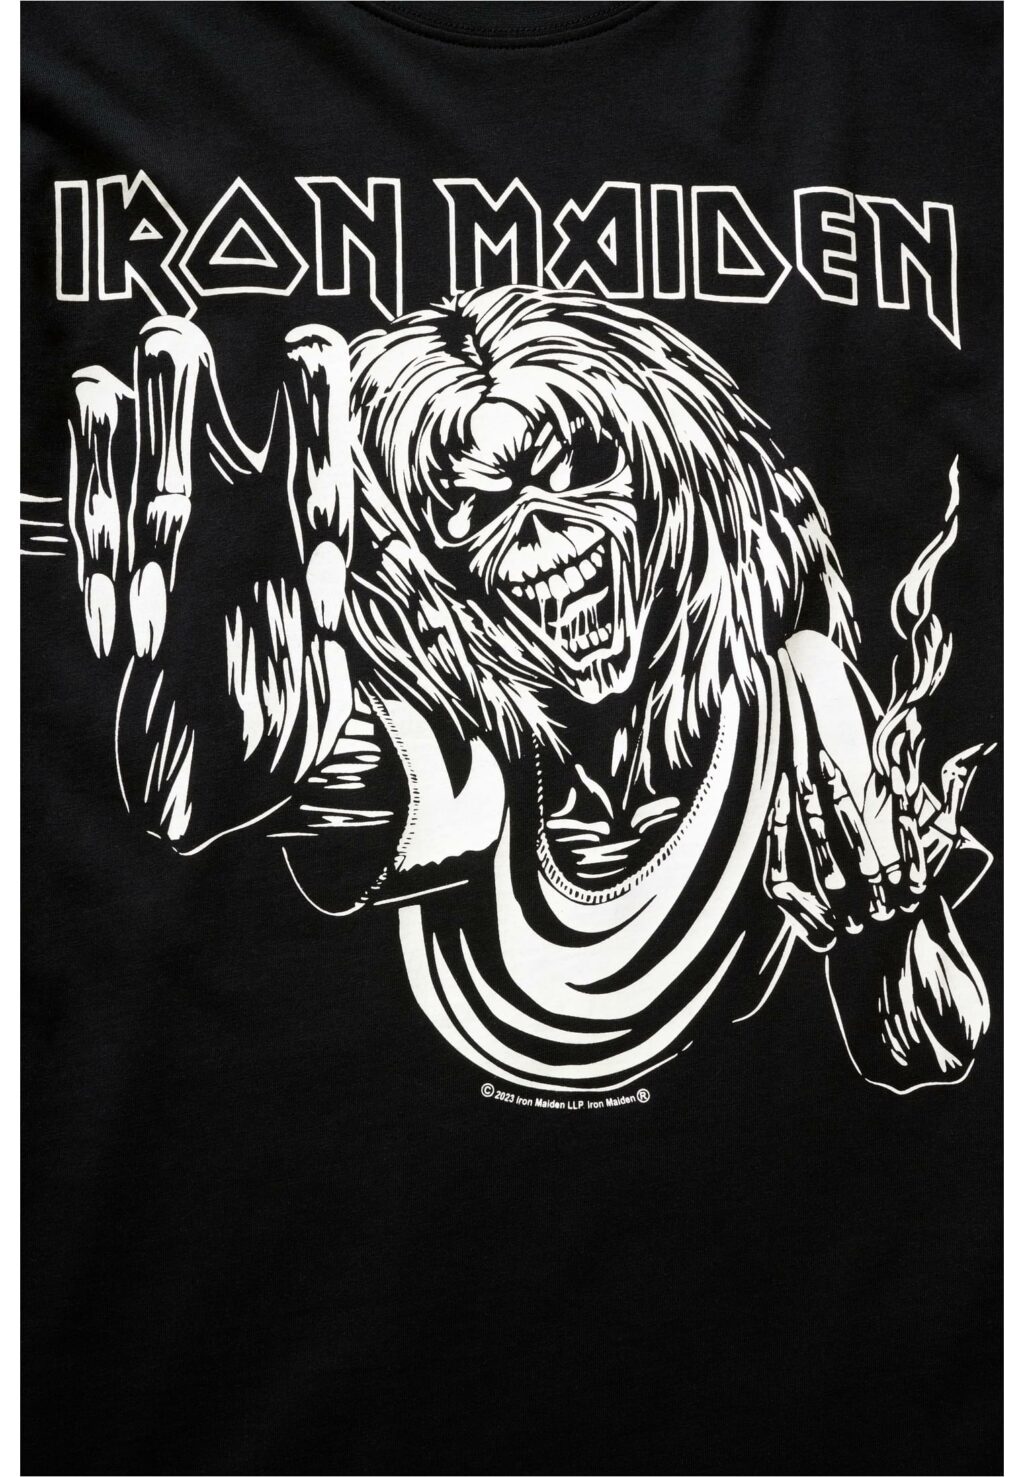 Brandit Iron Maiden Tee Shirt Design 3 ( glow in the dark pigment) black BD61049